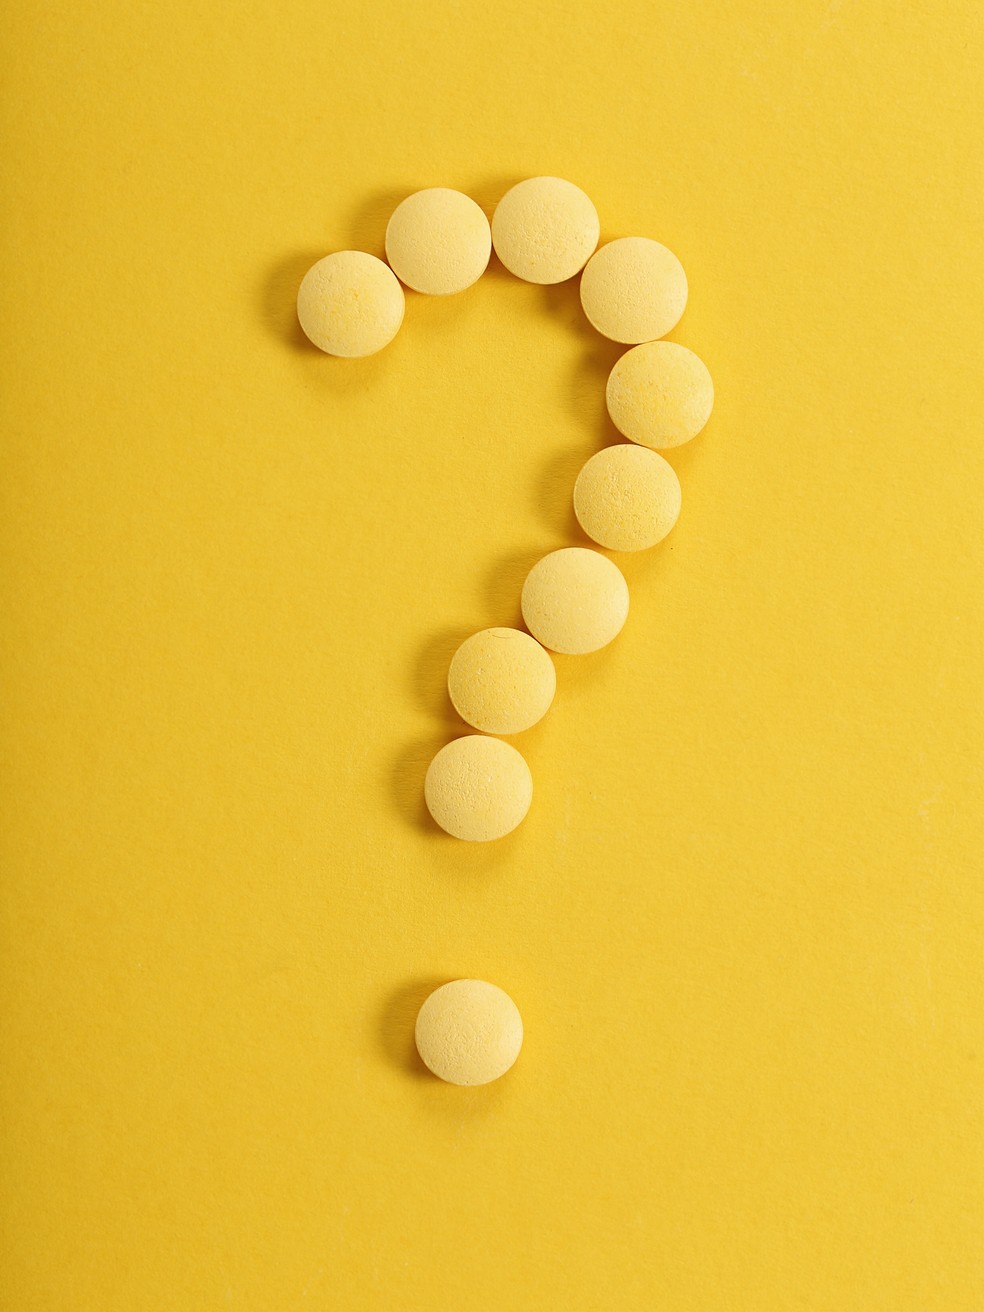 Nova revolução do anticoncepcional? Entenda por que as mulheres decidem abandonar a pílula — Foto: Freepik